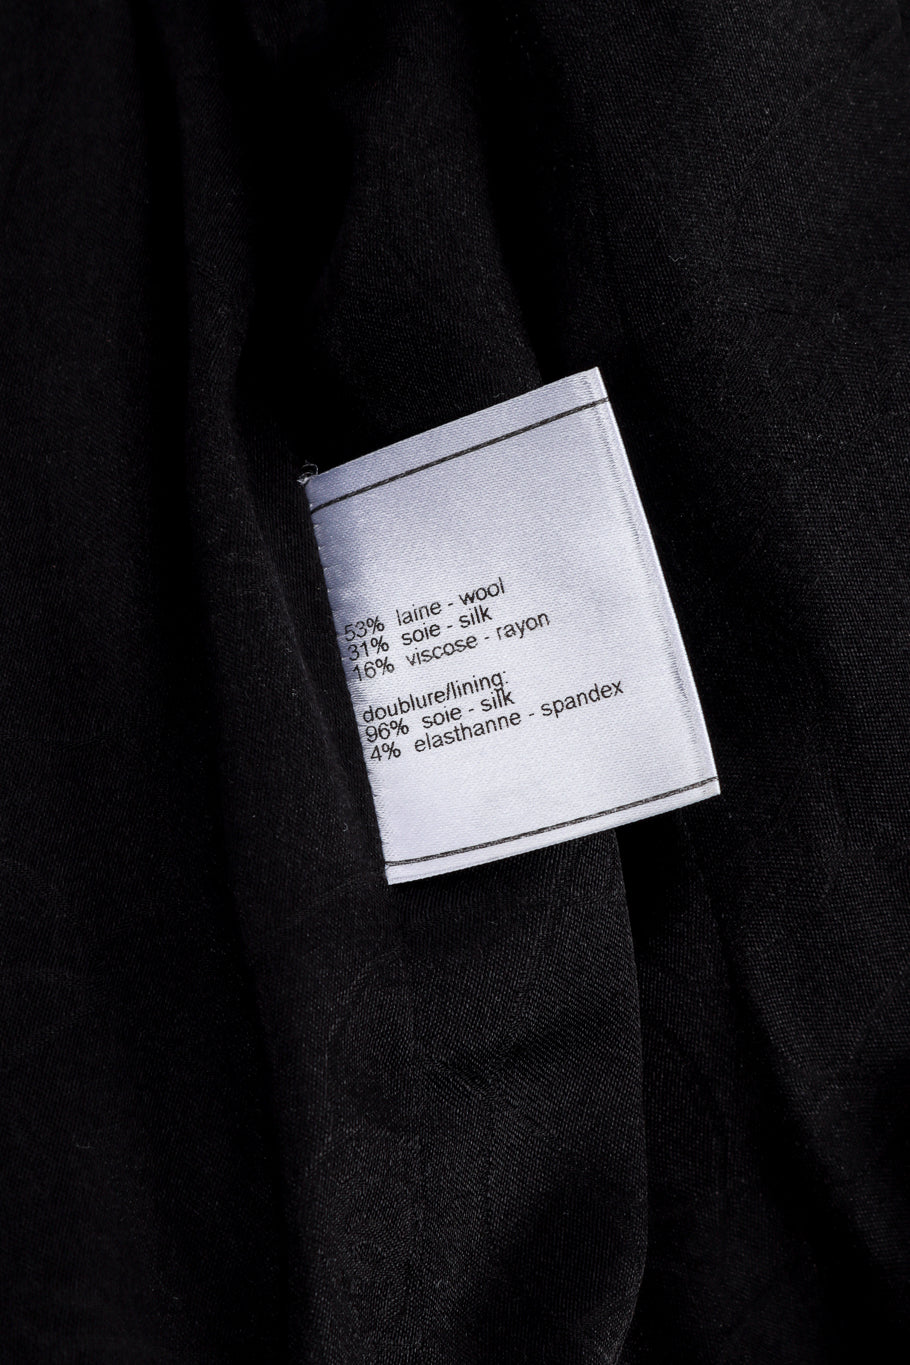 Chanel 2007C S/S Peplum Skirt Suit jacket content label @recessla